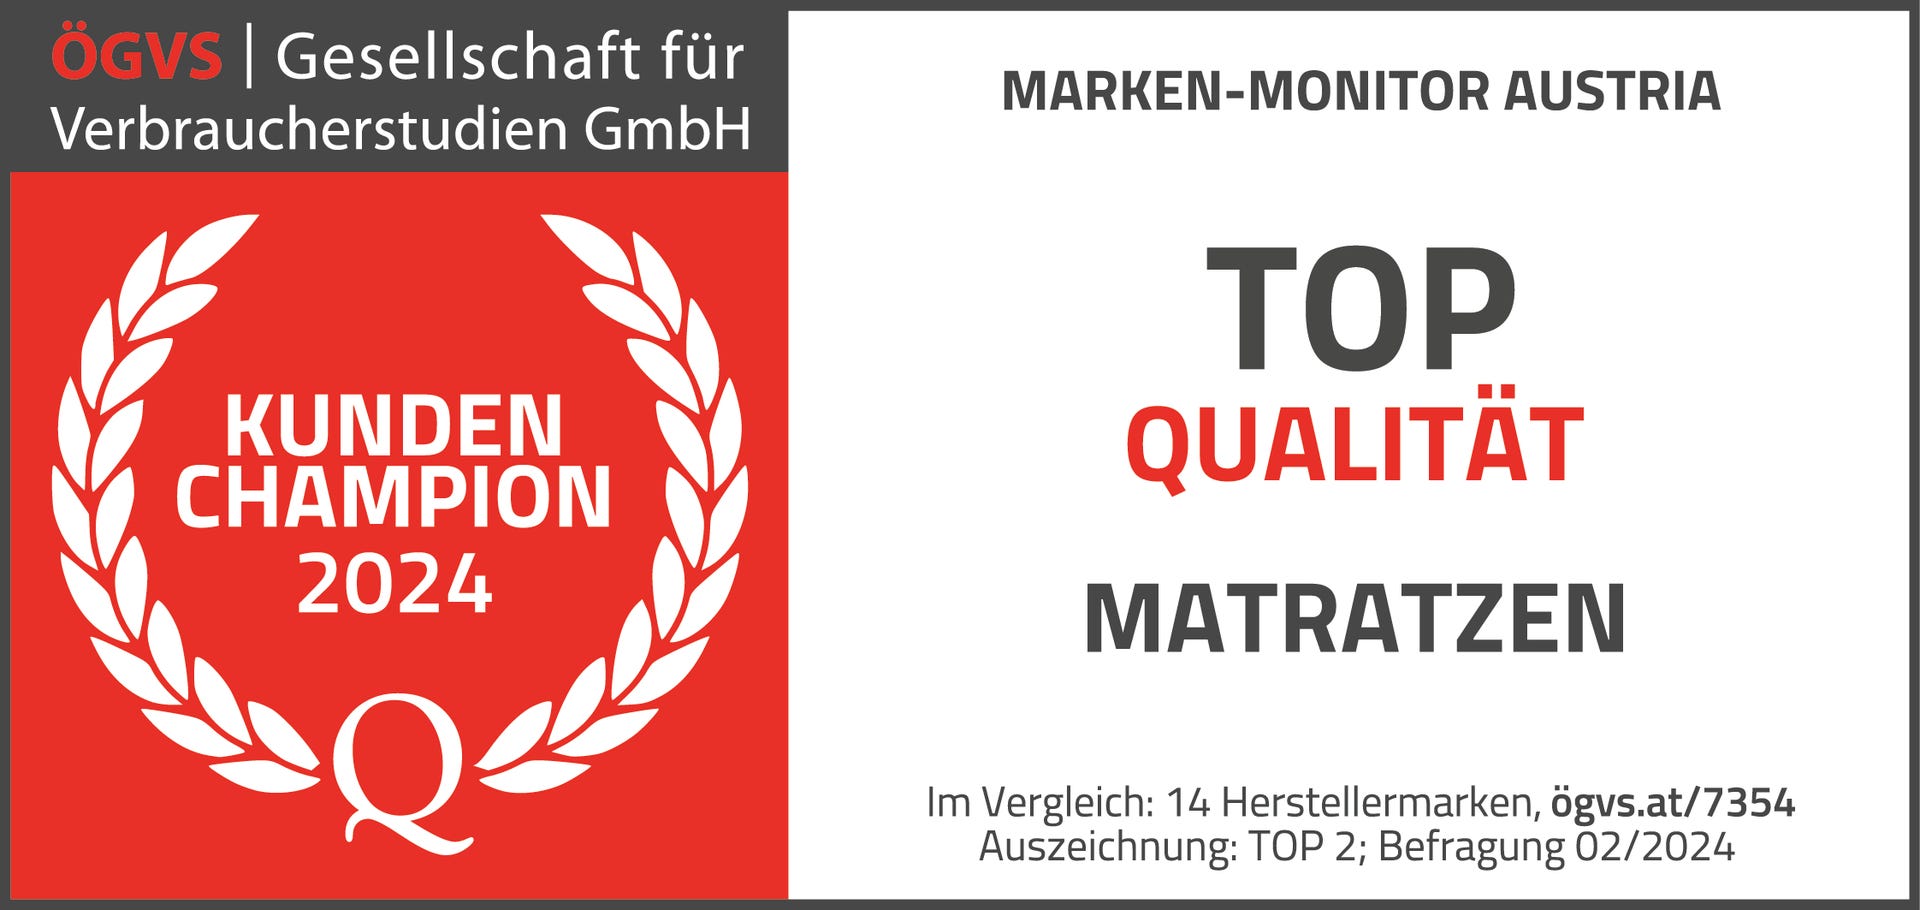 Matratzen_TOP_Qualität_hoch_nV-01.png